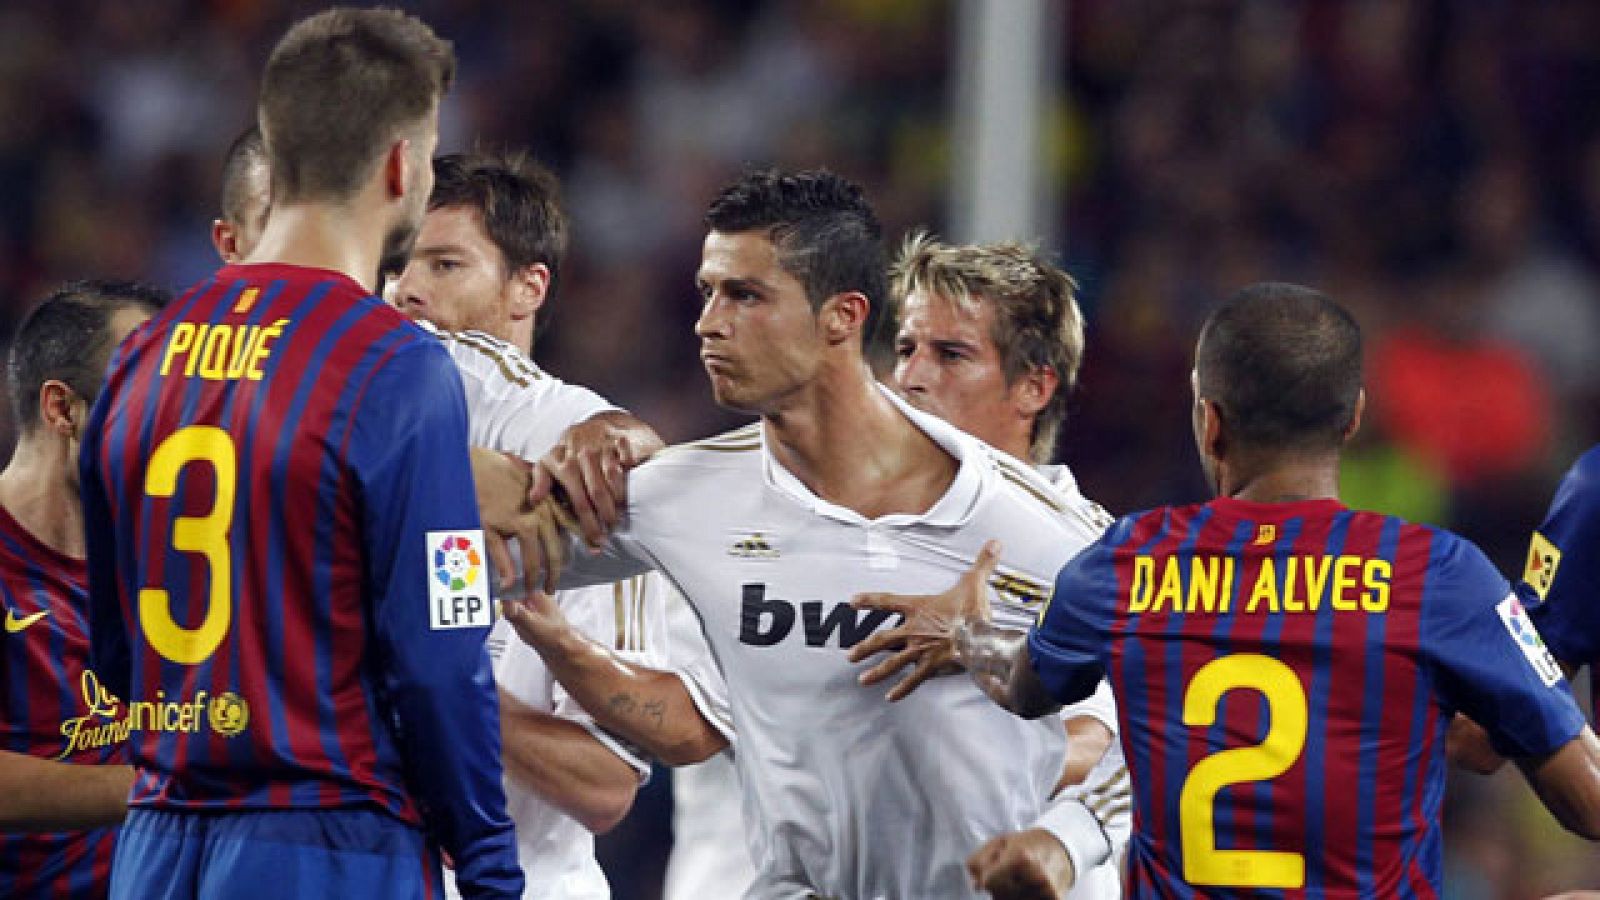 La Supercopa de España 2011 ha finalizado con una tangana entre los jugadores del Barça y Madrid